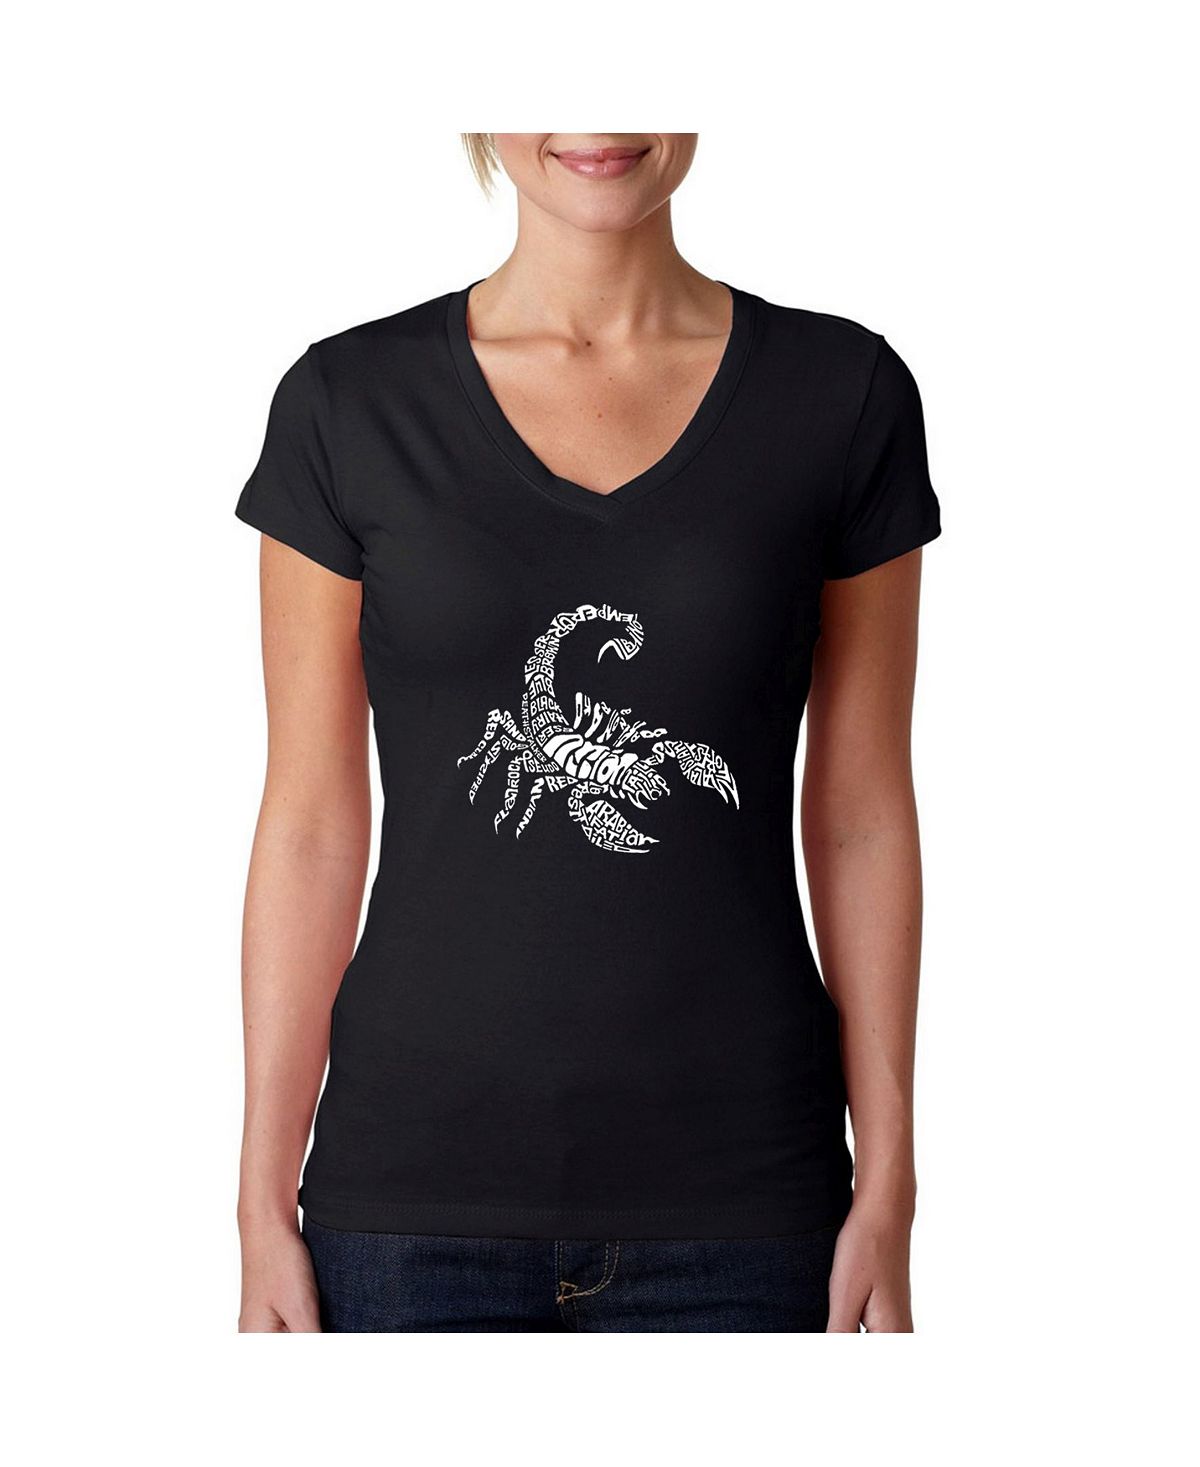 созвездие скорпиона Женская футболка word art с v-образным вырезом - types of scorpions LA Pop Art, черный